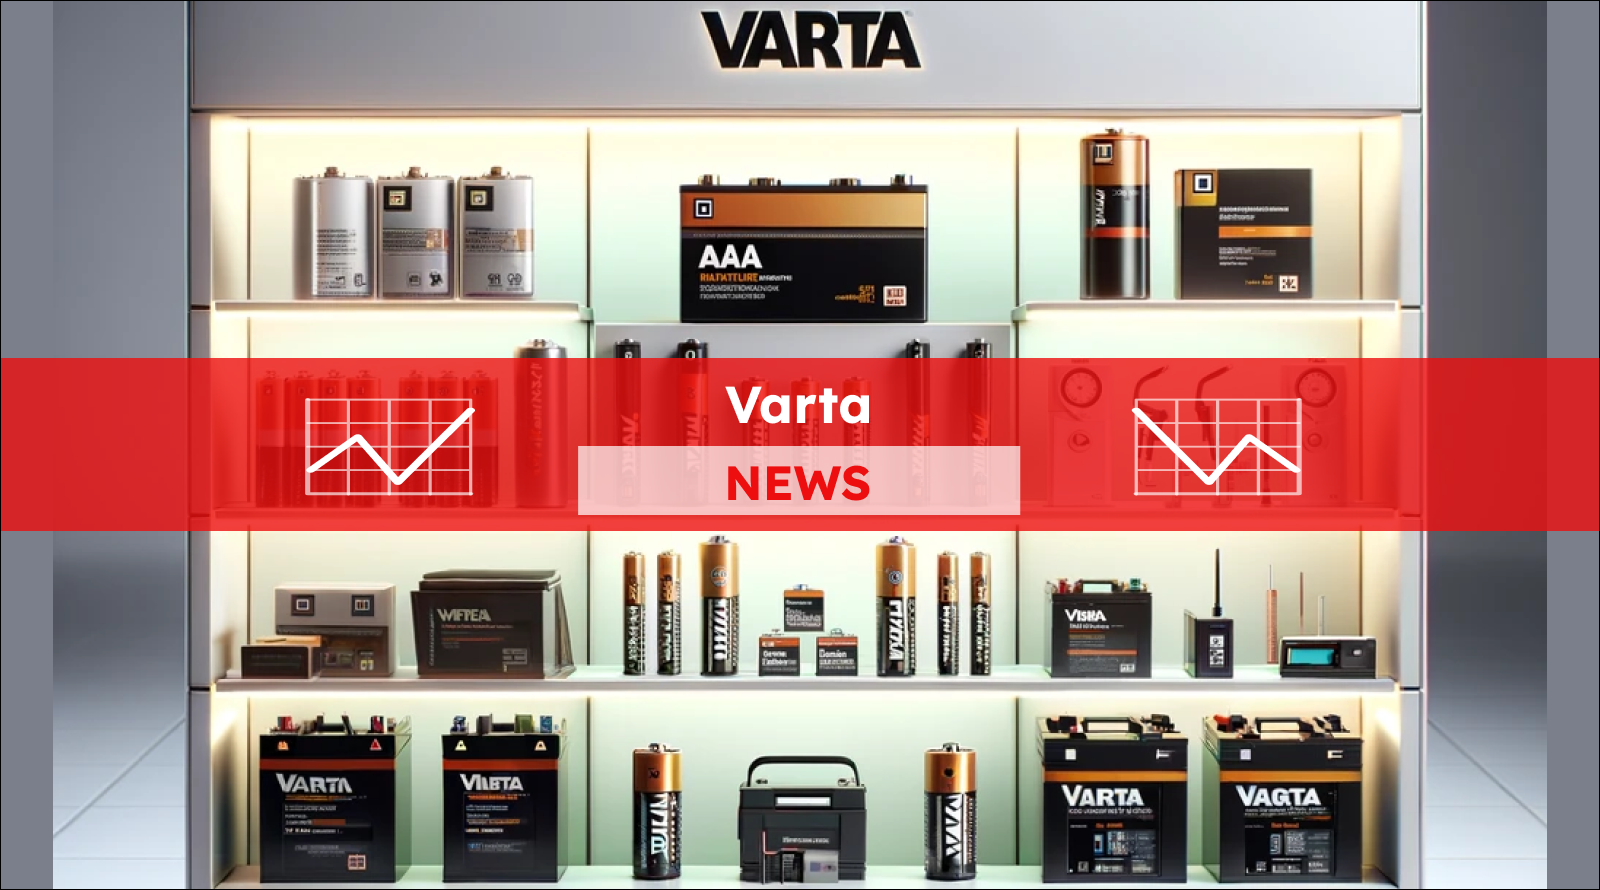 eine Auswahl von Varta-Produkten, darunter verschiedene Batterietypen und Elektronikzubehör, die auf einem beleuchteten Verkaufsregal präsentiert werden, mit einem Varta NEWS Banner.